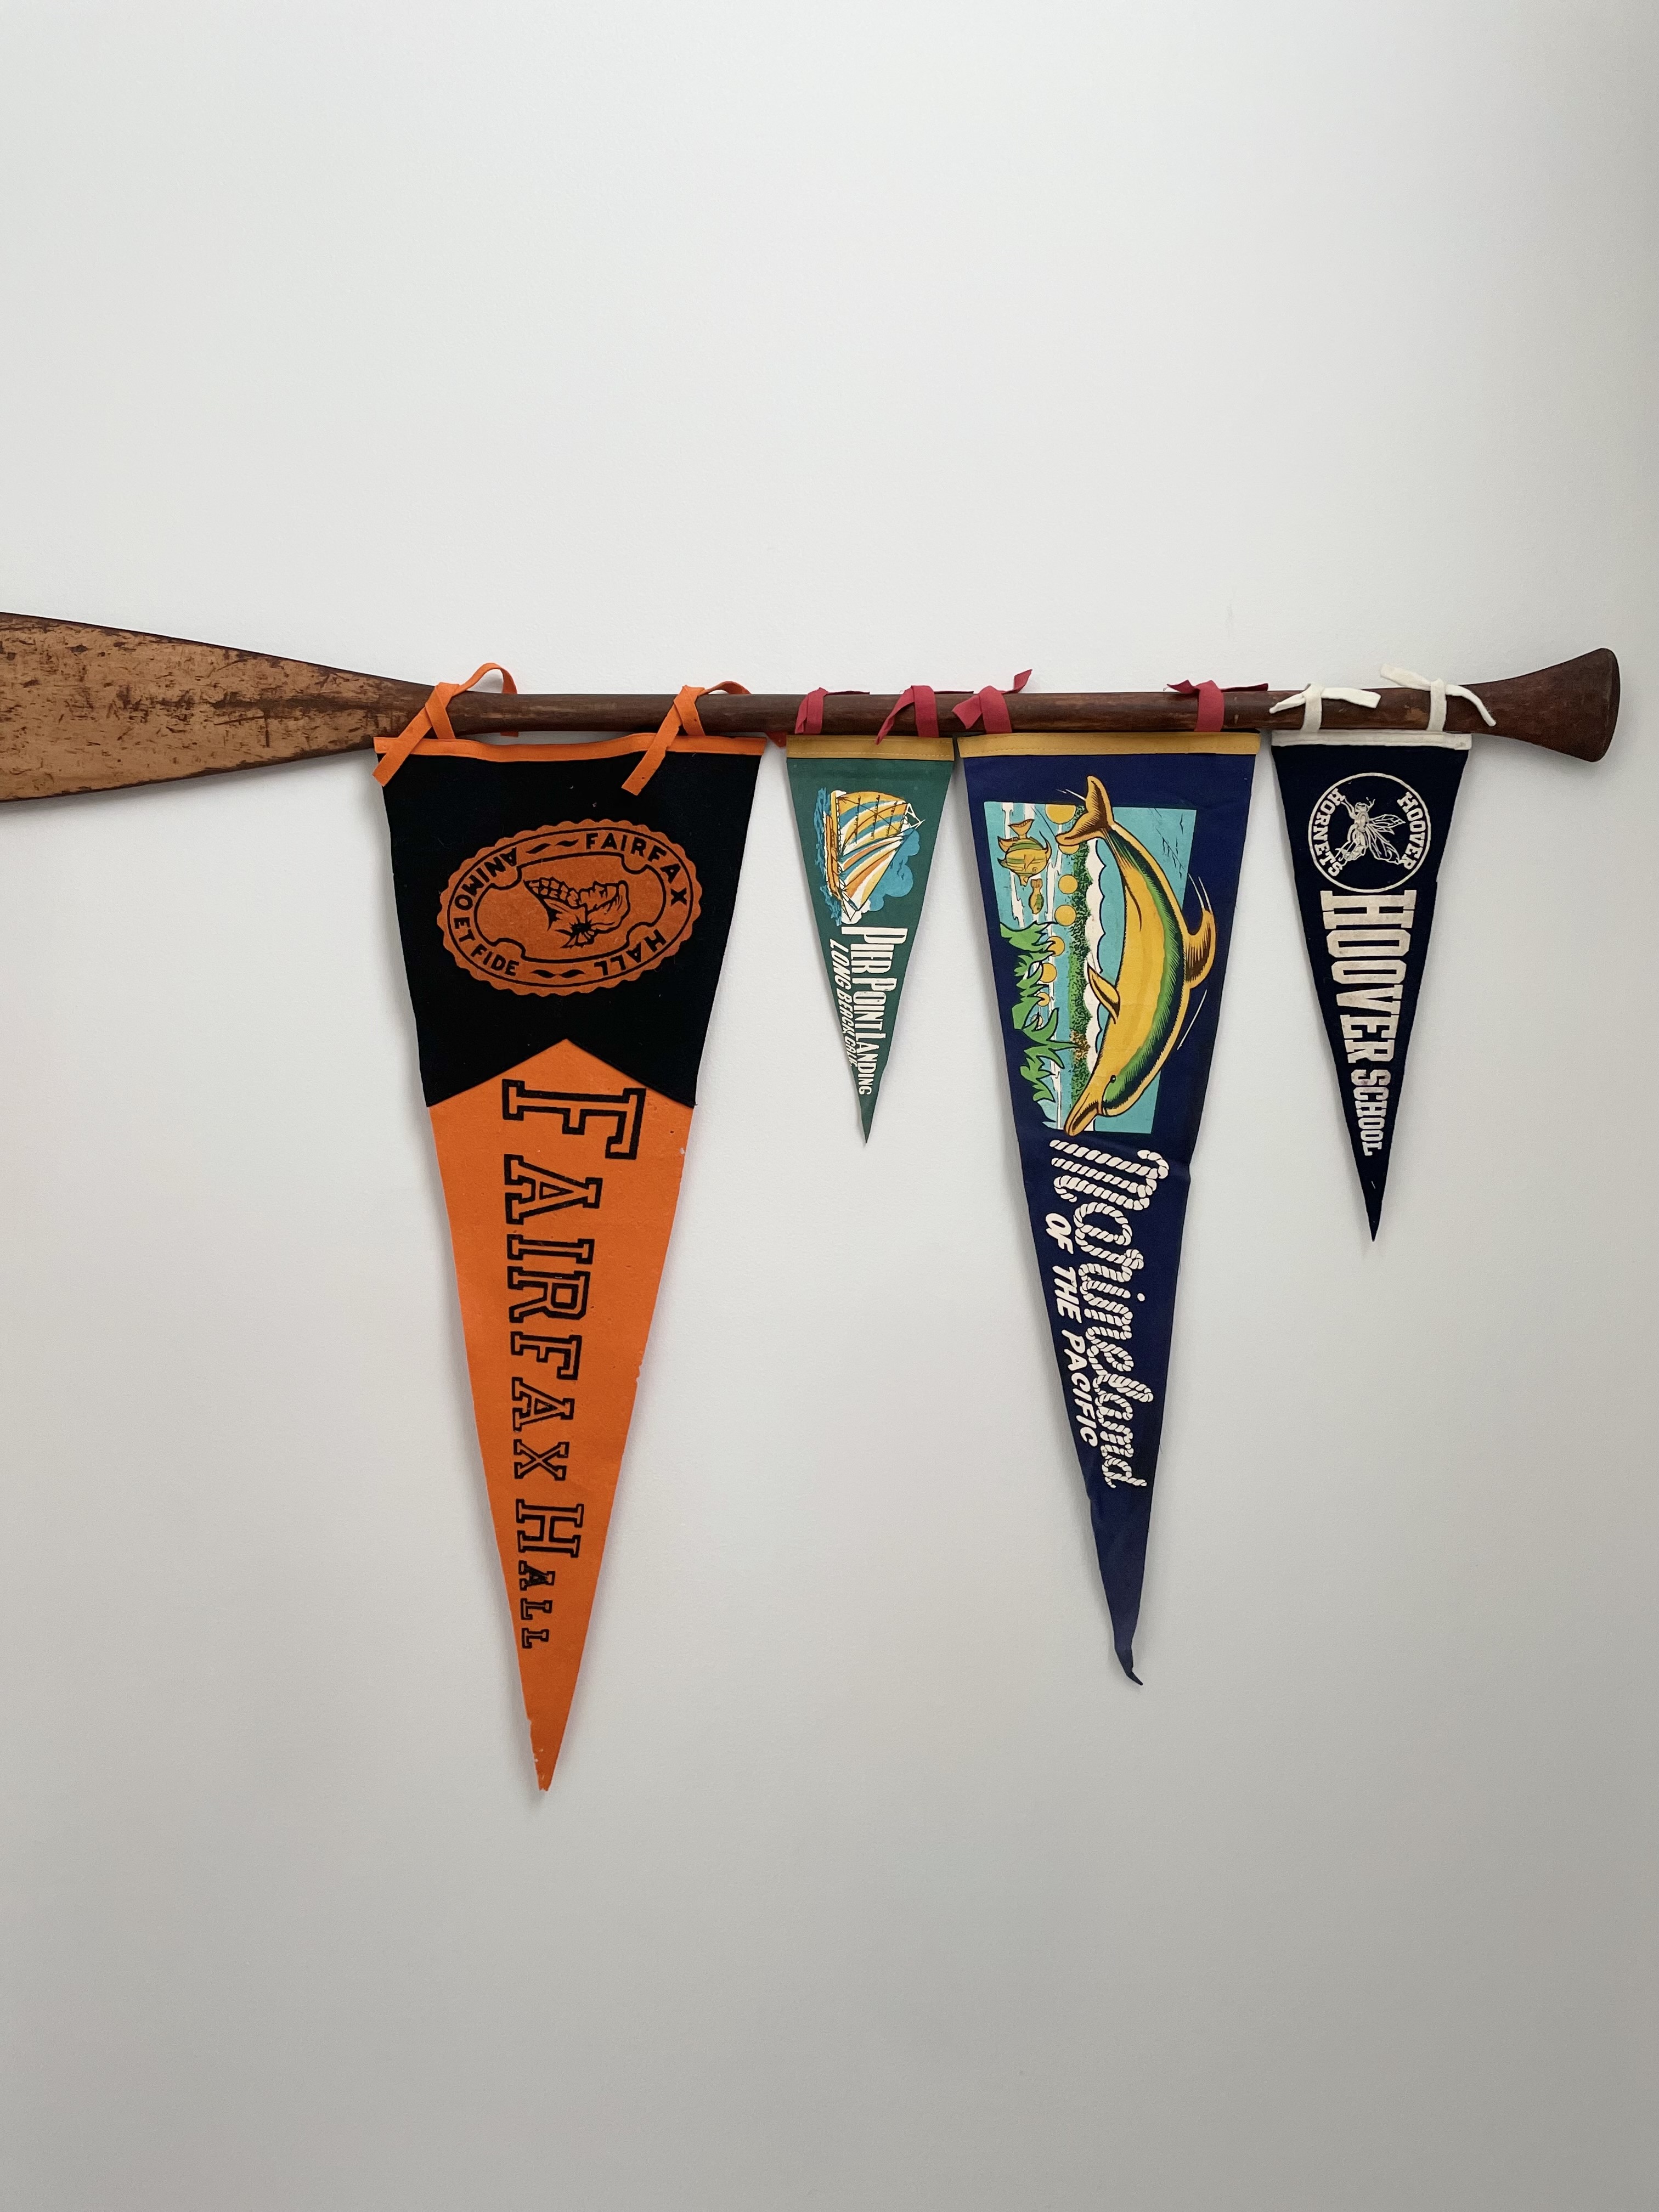 pennants displayed on an oar